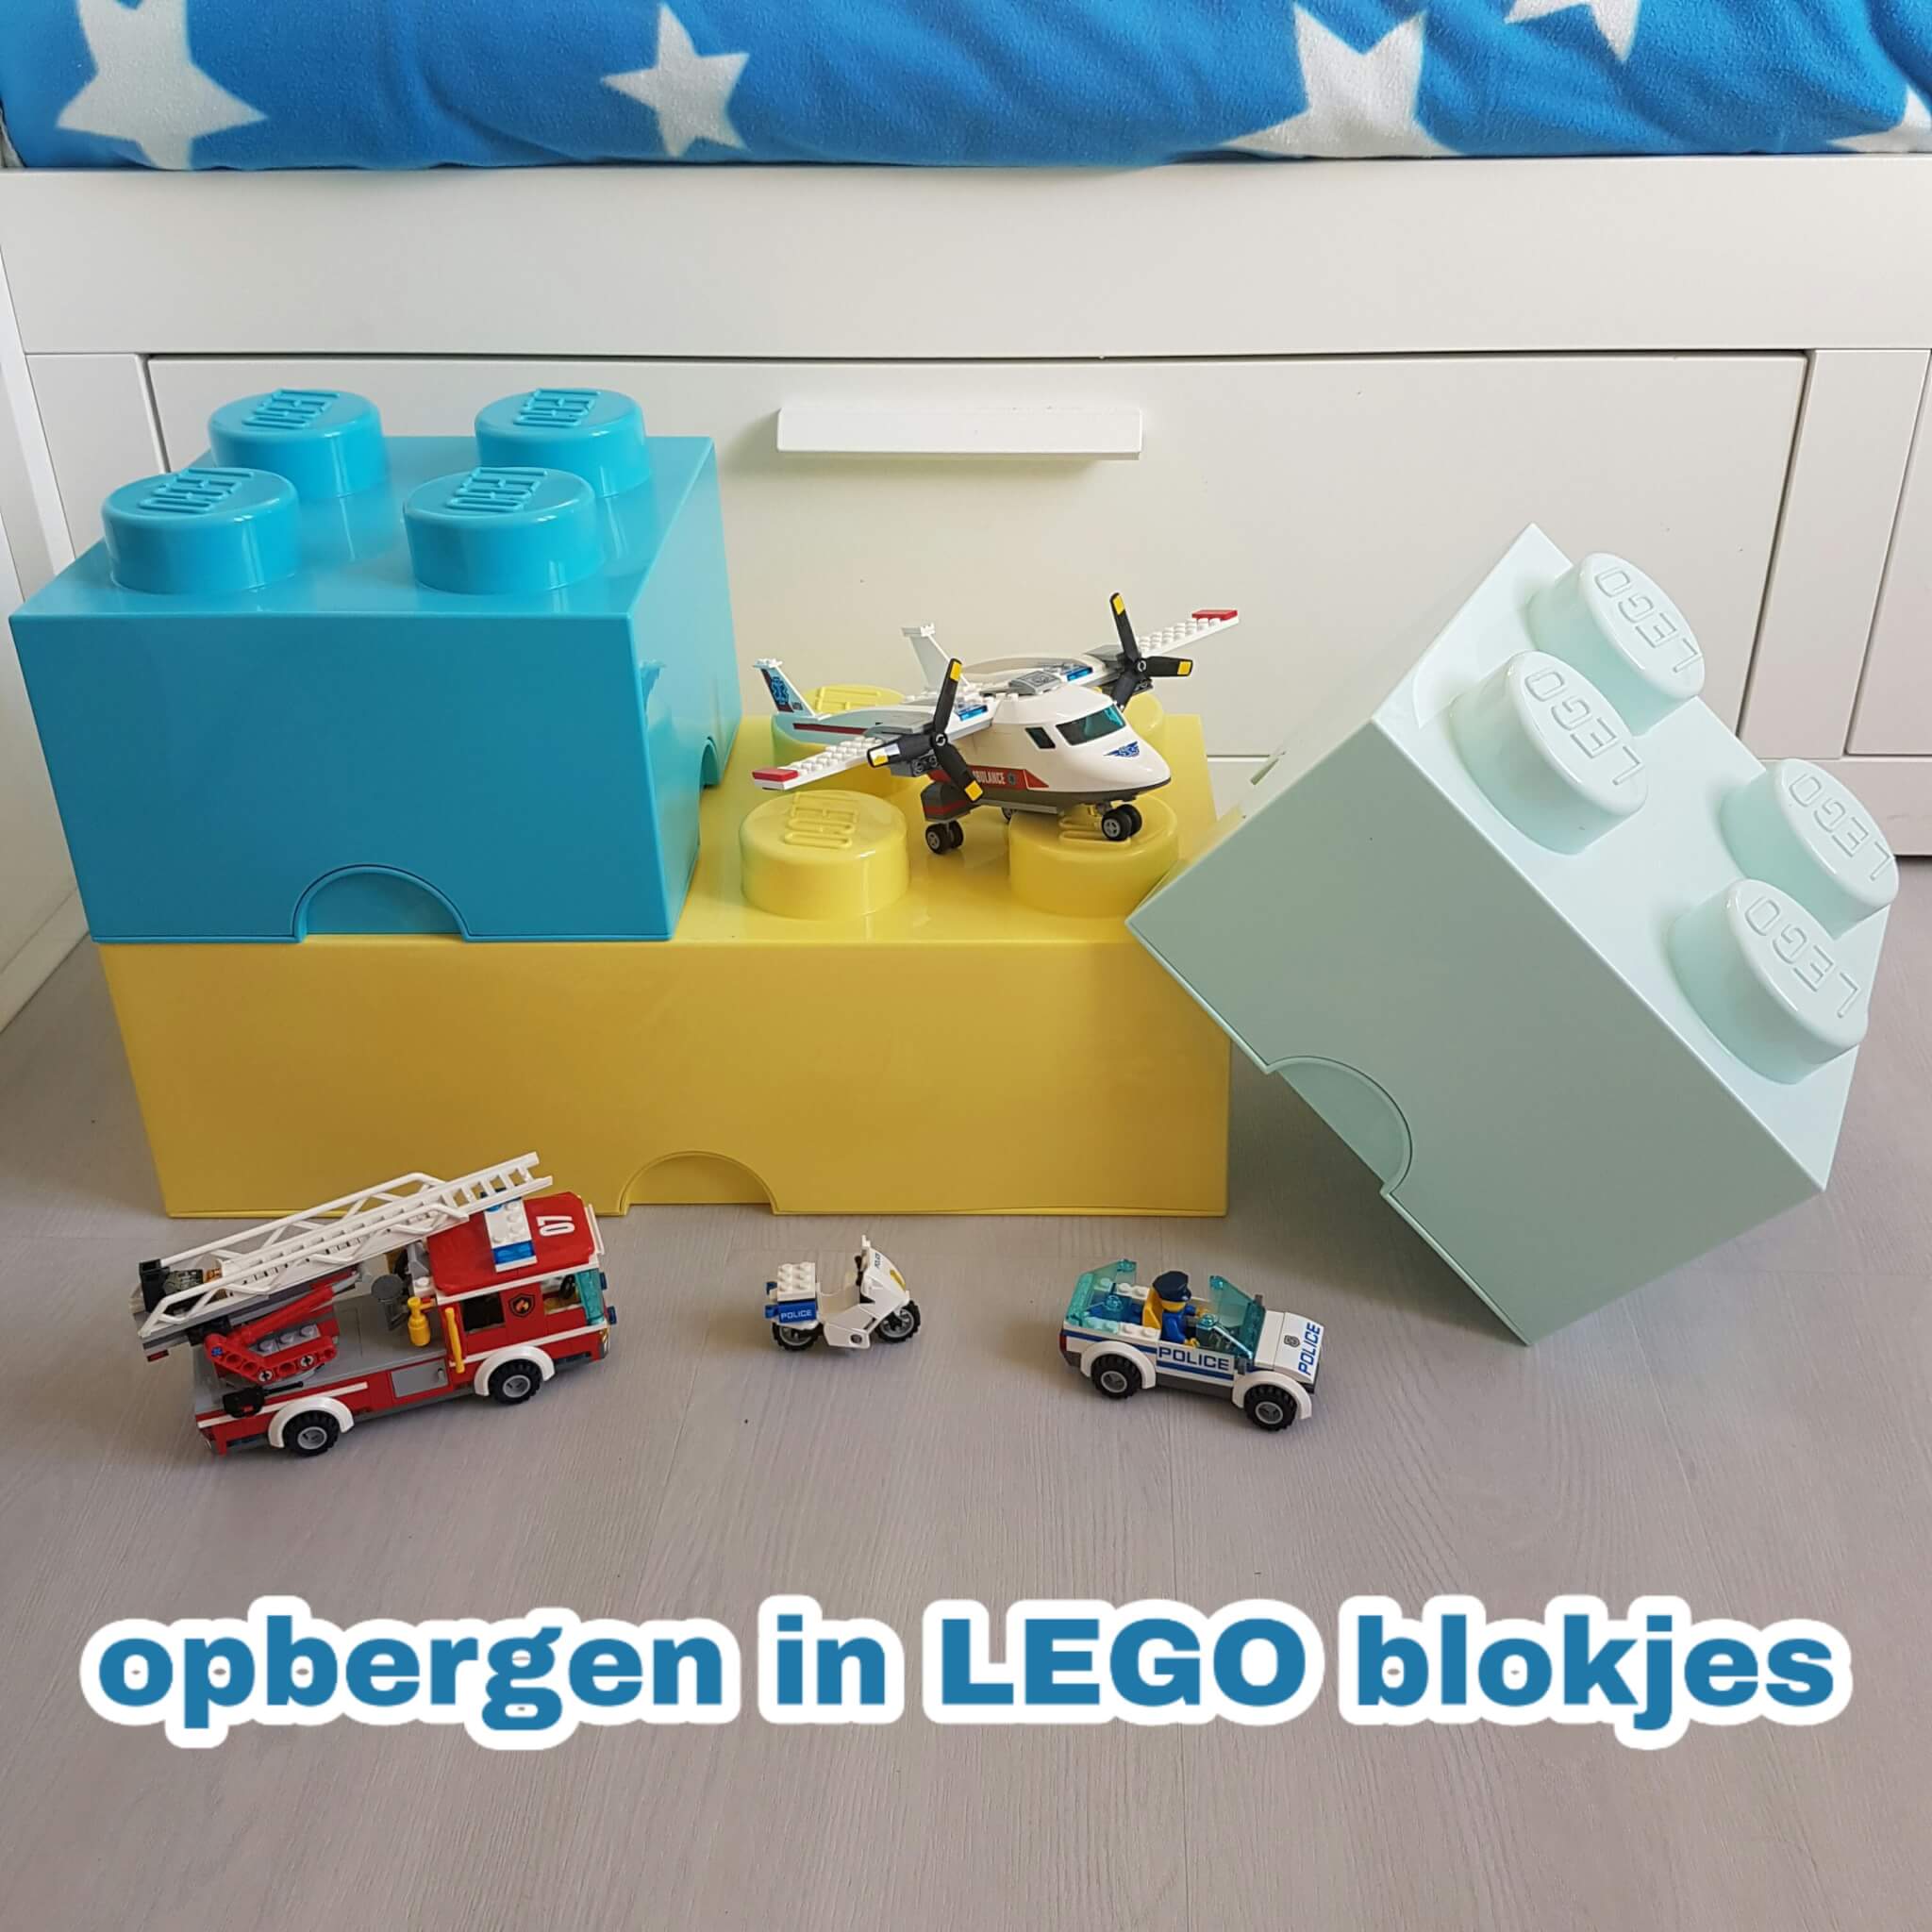 Opbergen in LEGO blokjes: van lunchbox tot grote opbergdoos